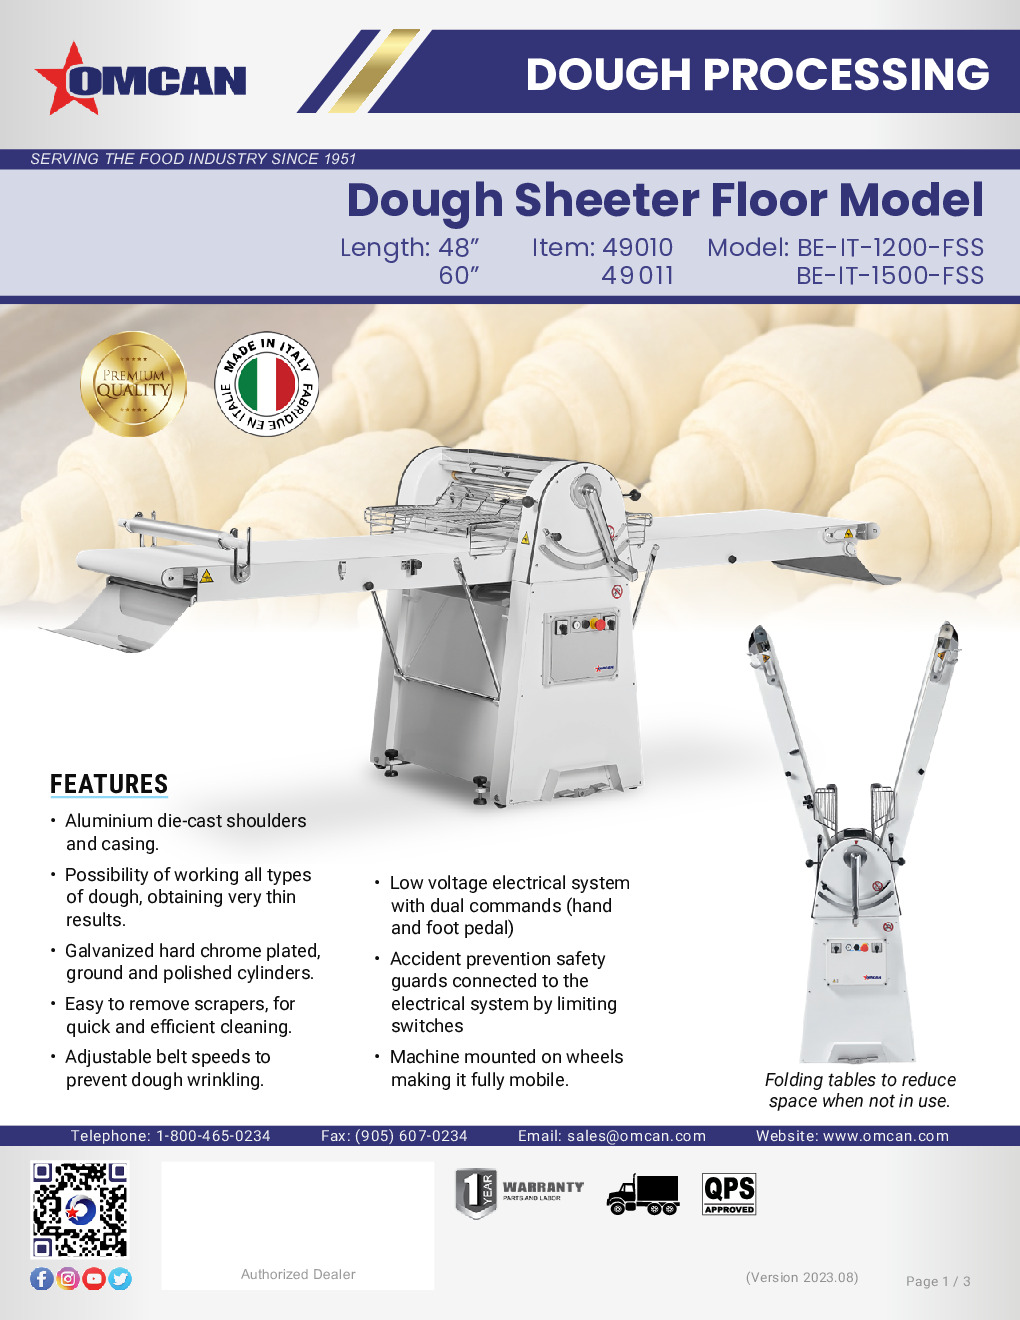 Omcan USA 49010 Dough Sheeter